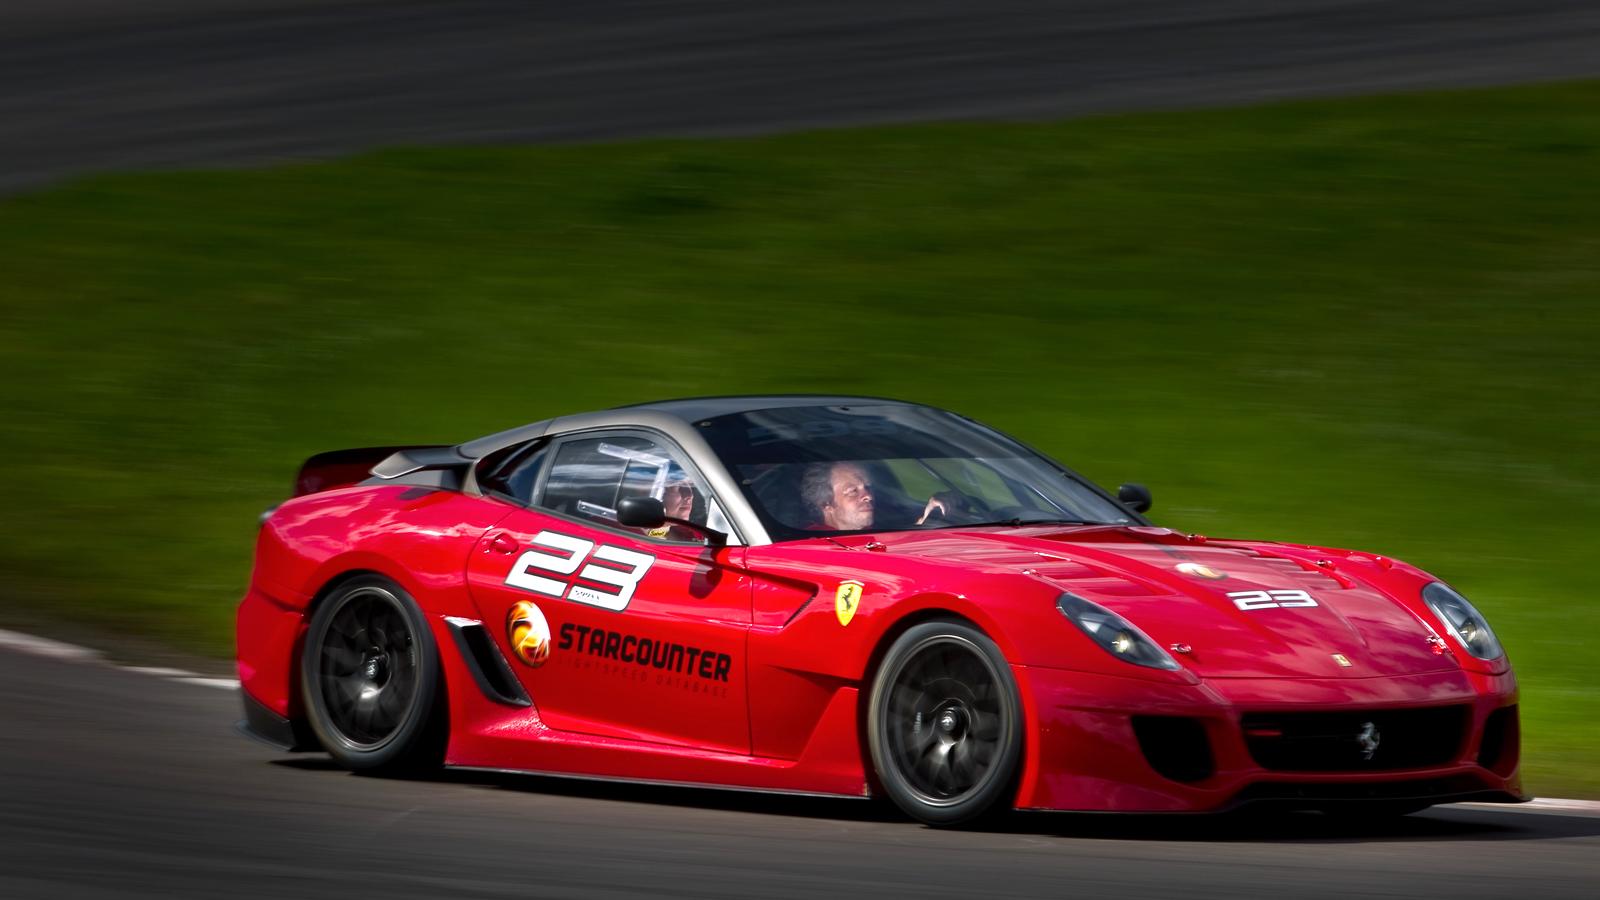 Ferrari 599 XX  Vår egen Robert Collin fick köra den förra året. I priset ingår att få köra sin bil på sju olika racerbanor runt om i världen tillsammans med instruktörer. Motor: V12. 720 hk. Acceleration: 0-100 km/tim på 3 s. Toppfart: 315 km/tim. Pris: 16 miljoner kronor. Foto: ANDREAS HILLERGREN